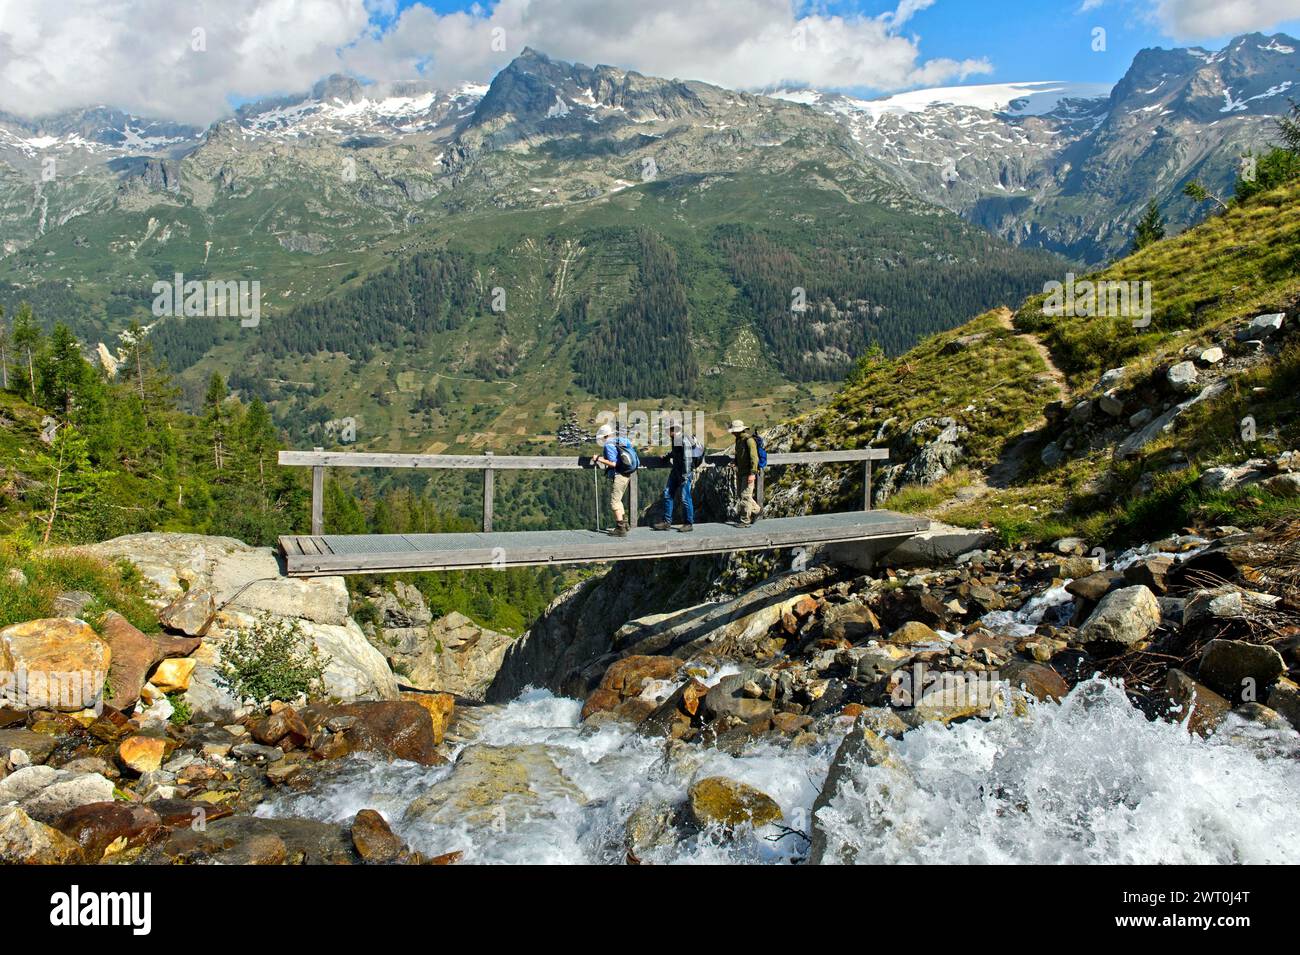 Gli escursionisti attraversano uno stretto ponte sul torrente Naestbach sulla strada per il rifugio Bietschhorn, vicino a Blatten, Loetschental, Vallese, Svizzera Foto Stock